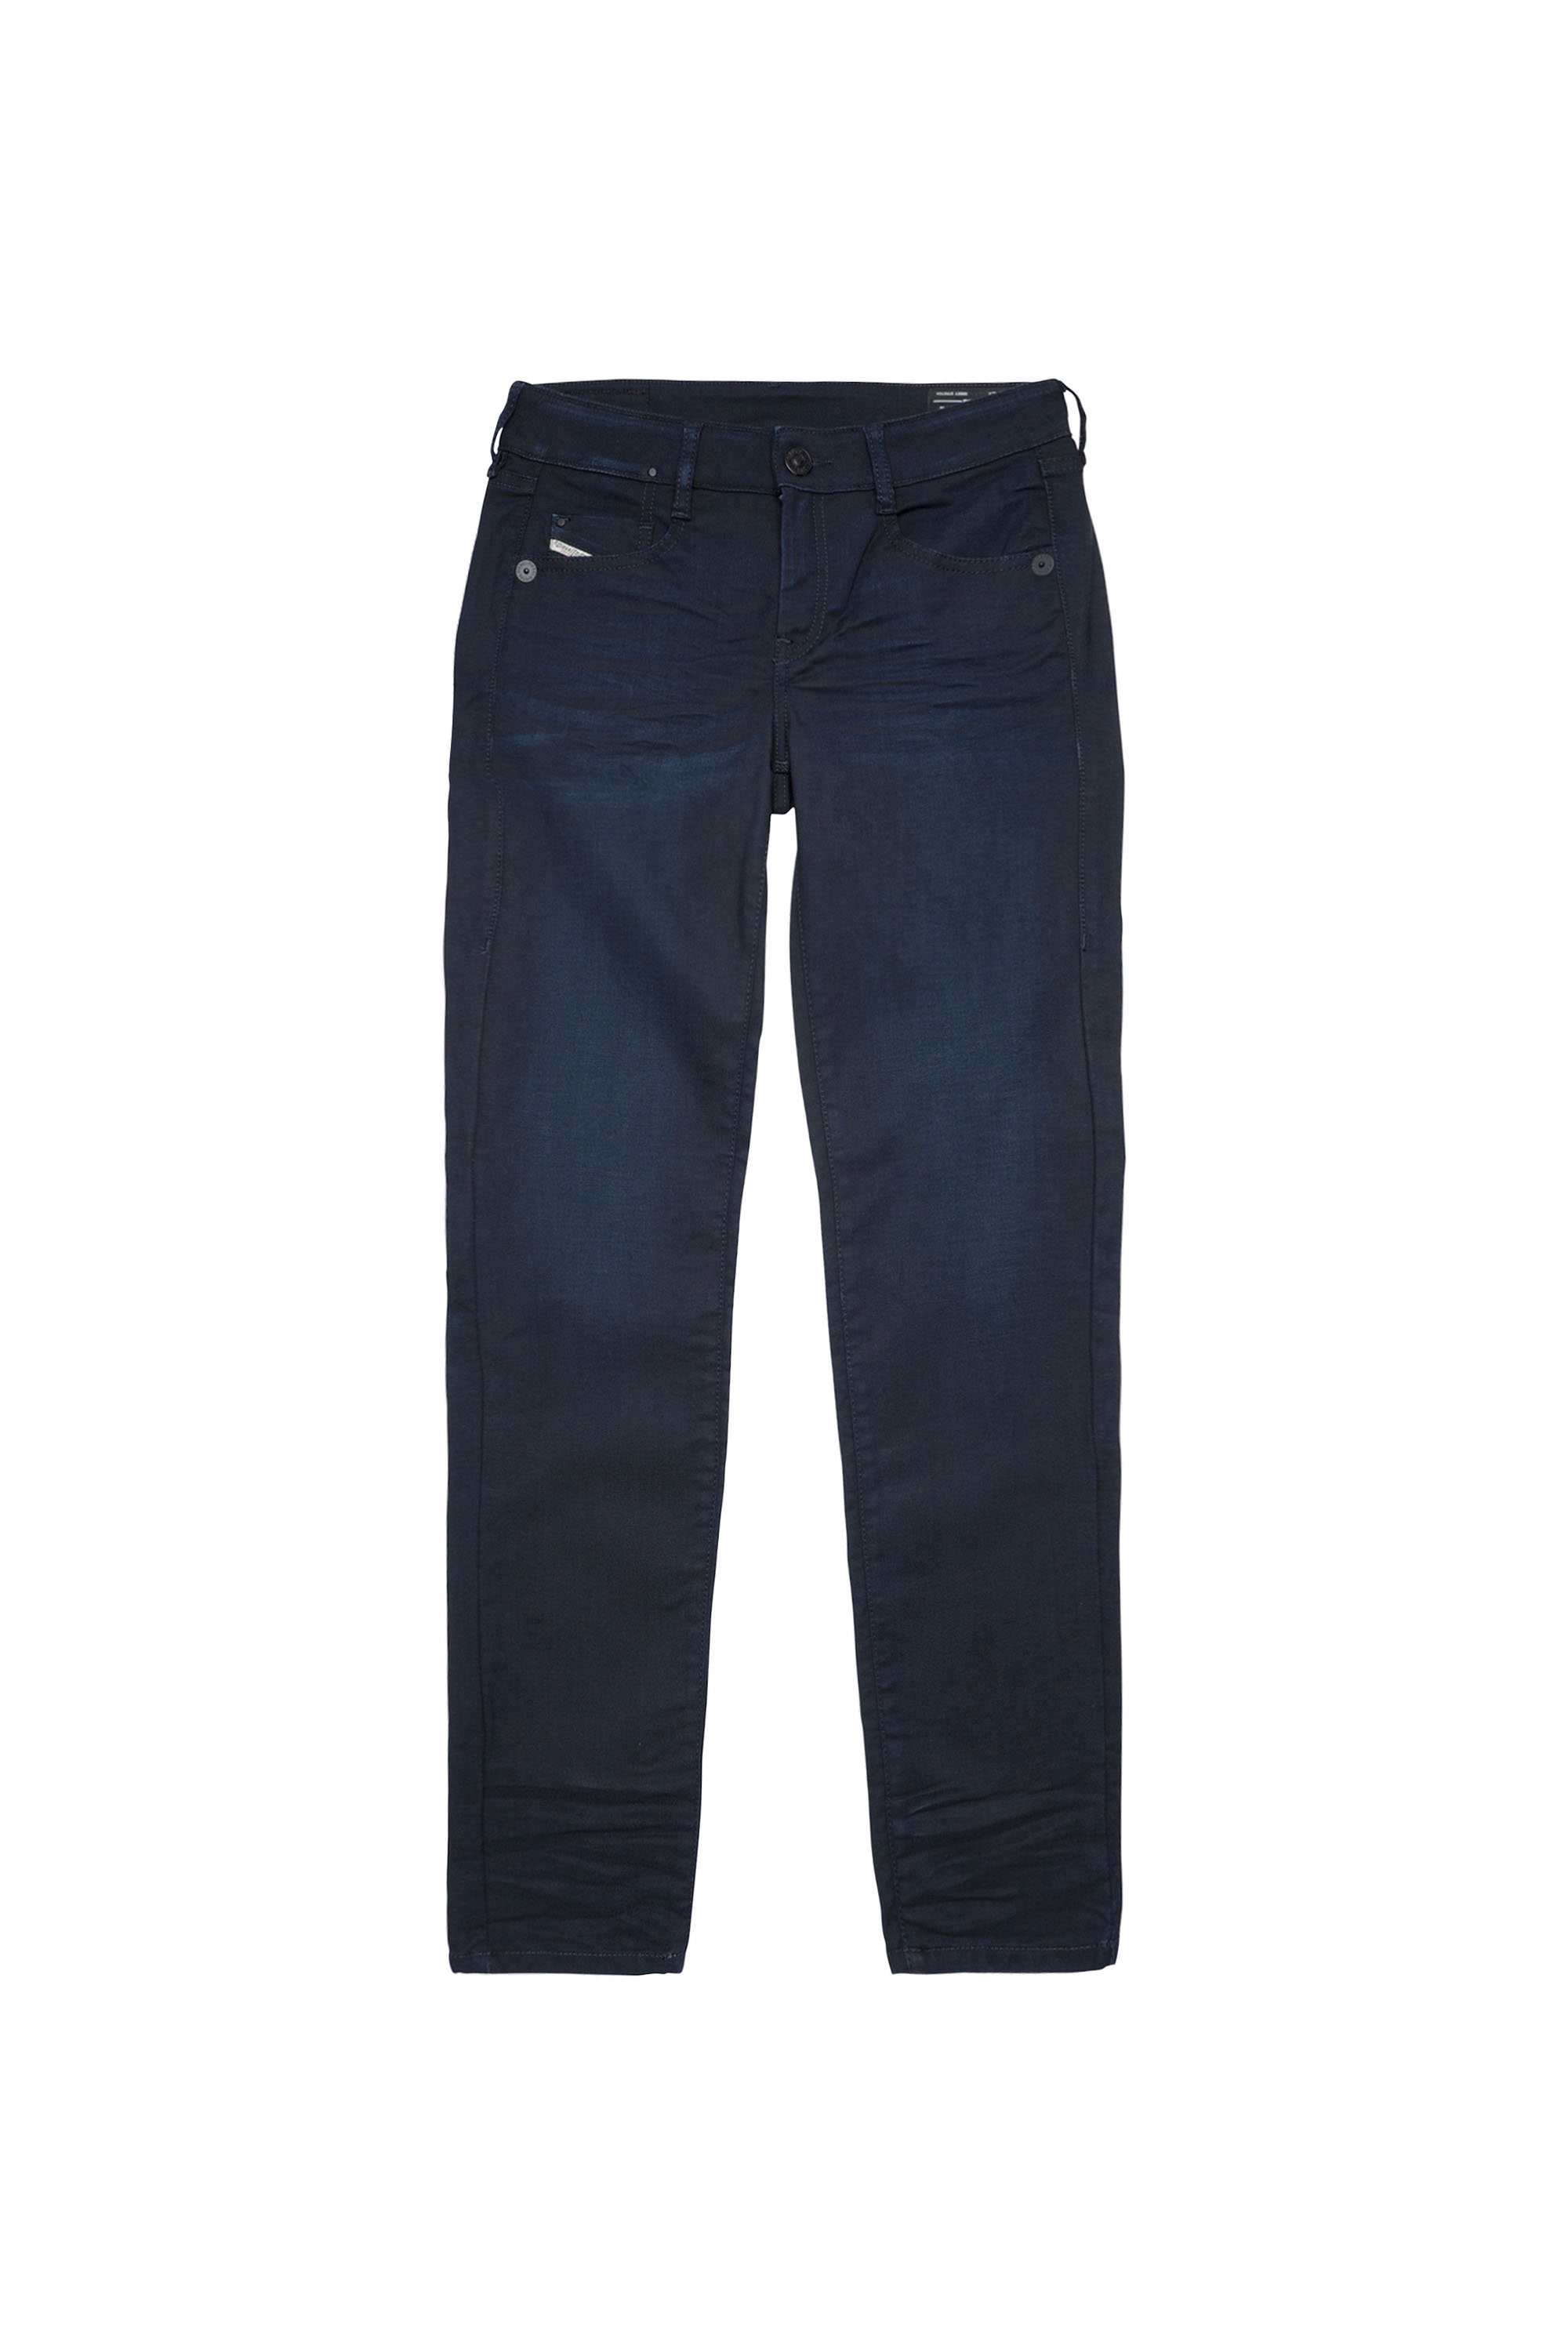 Diesel - D-Ollies Slim JoggJeans® 069XY, Dark Blue - Image 7